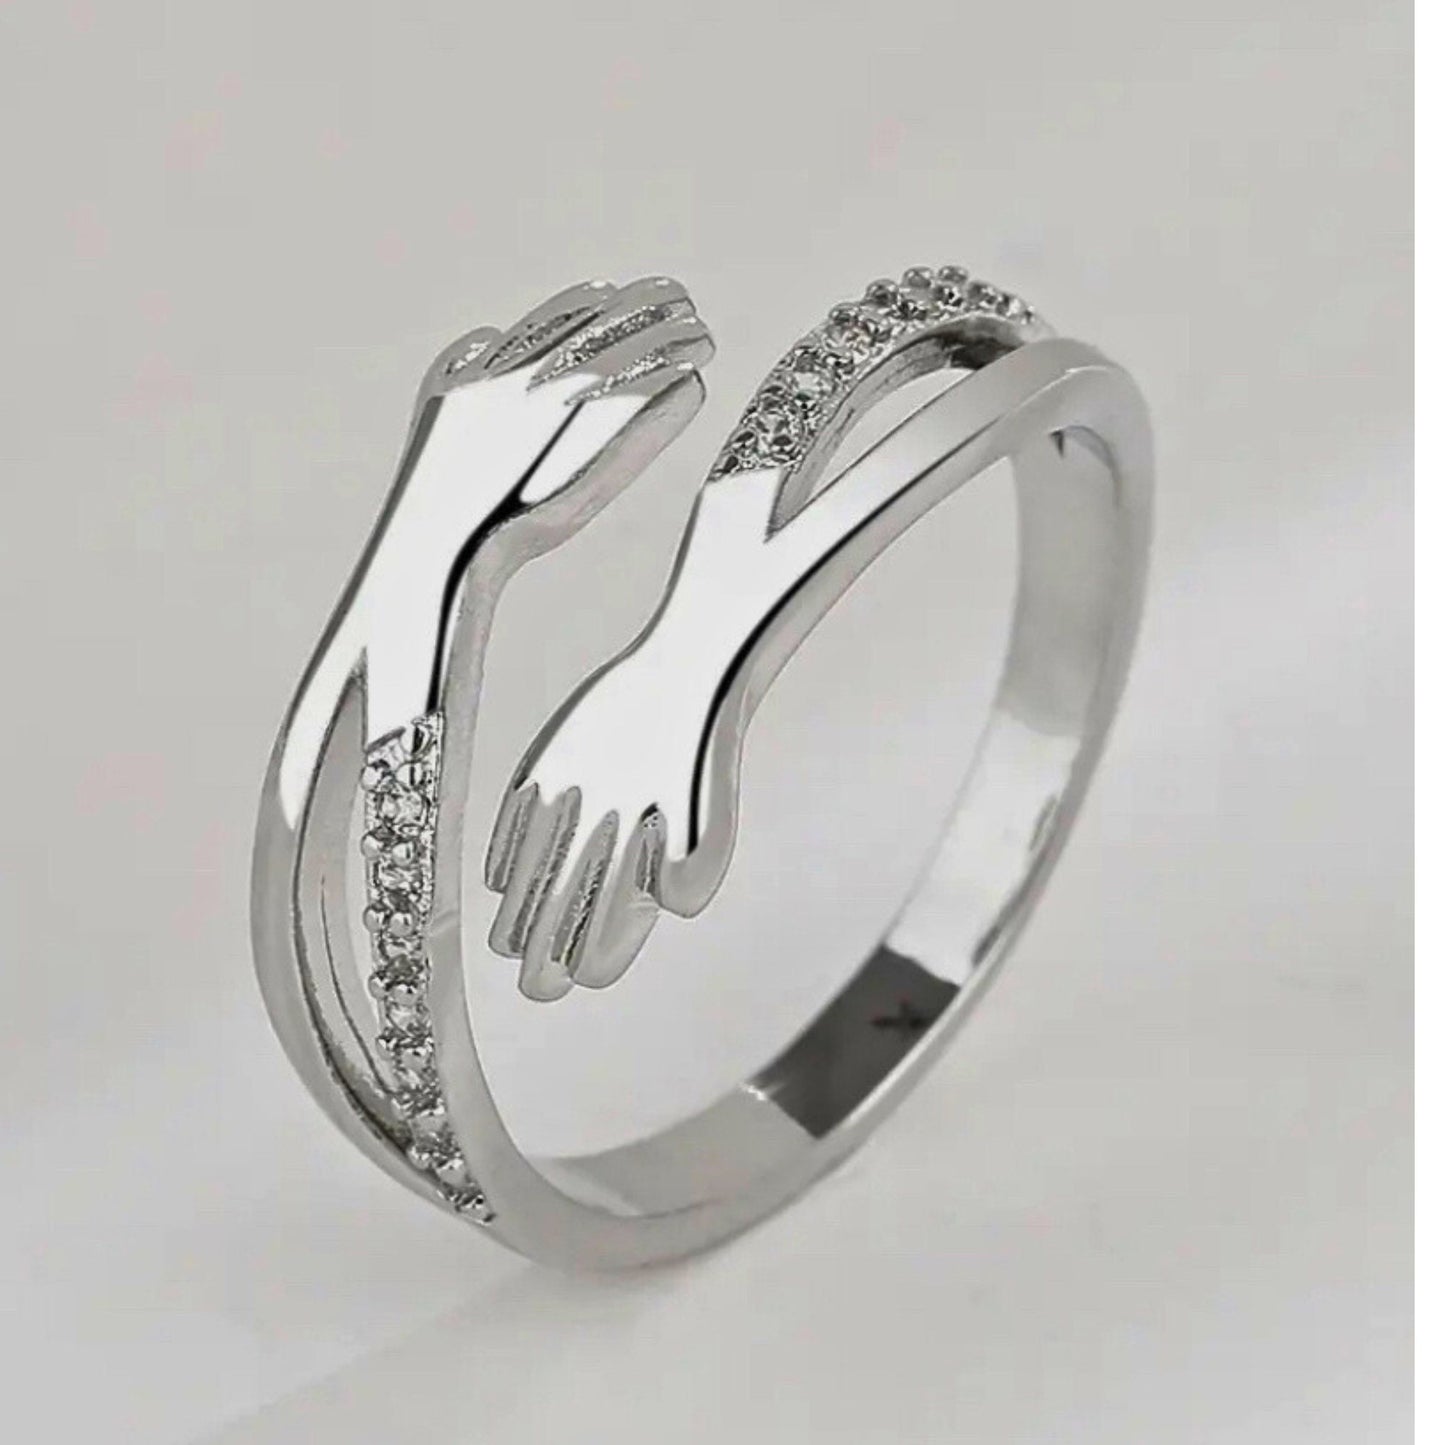 Hug ring sterling silver adjustable fidget ring Promise ring hug heart ring friendship ring promise ring hug ring for mom’s birthday gift